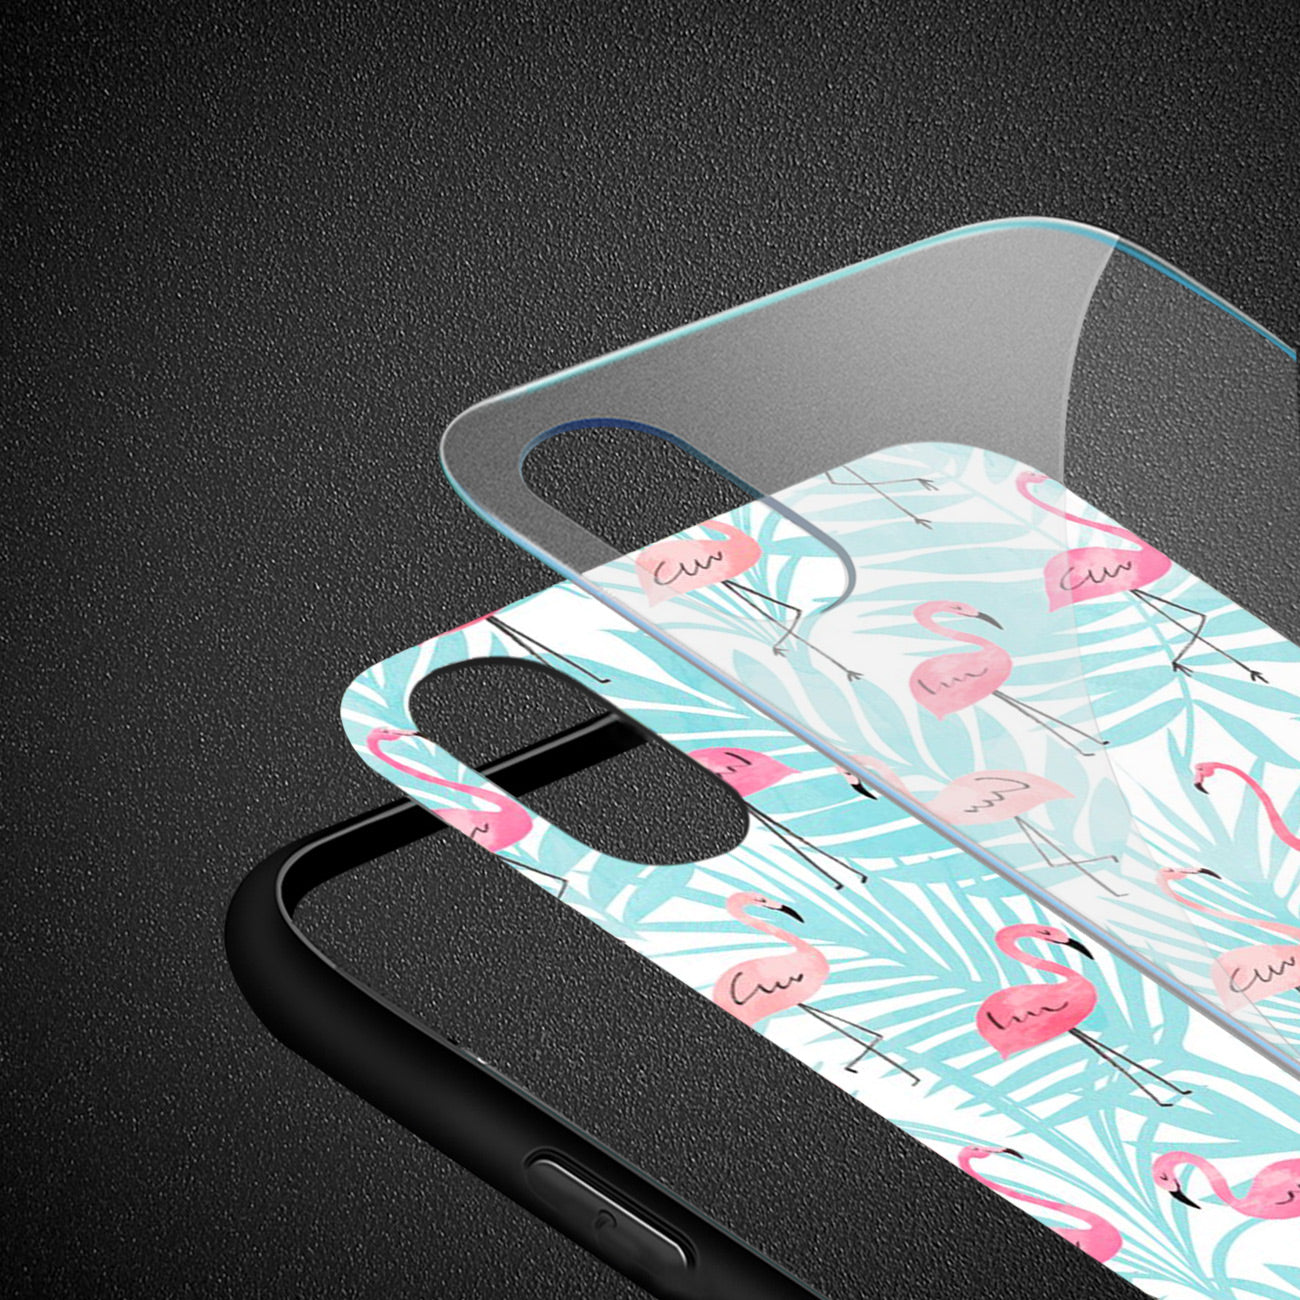 Reiko iPhone XS MAX Hard Glass Design TPU Case